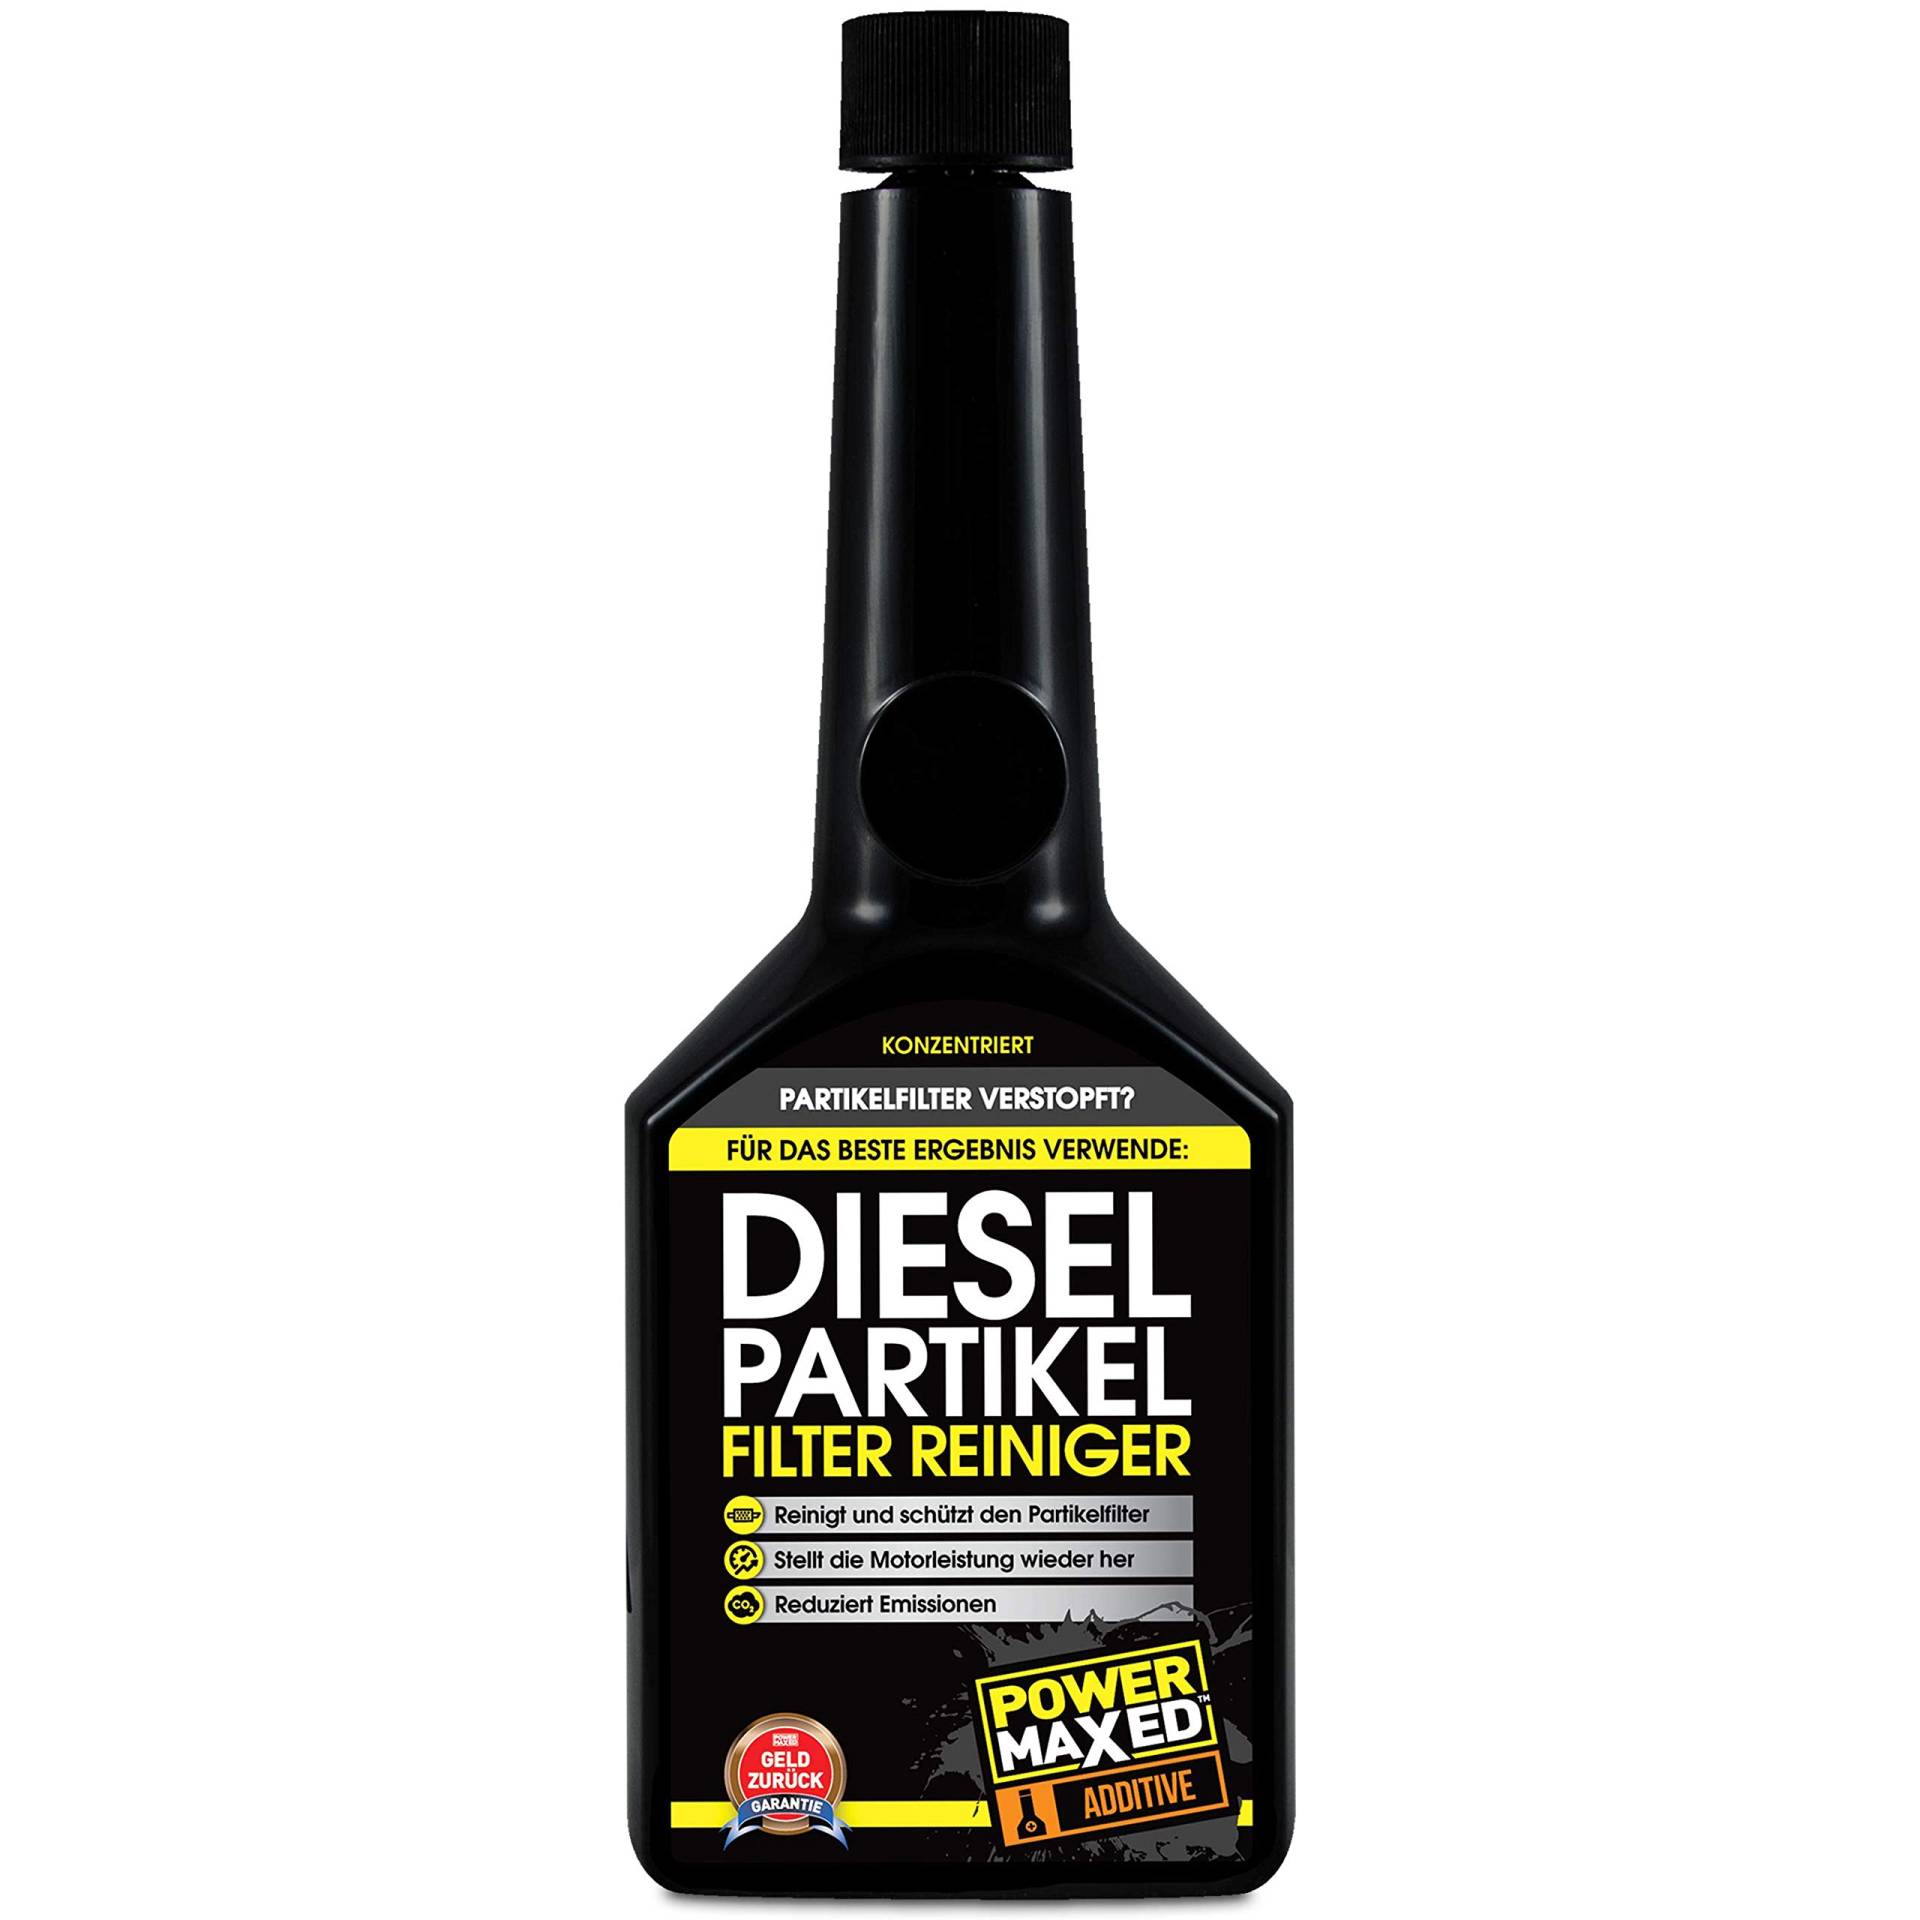 PowerMaxed Diesel Partikelfilter Reiniger | Partikelfilter freibrennen | DPF reinigen | dpf cleaner | 325ml von PowerMaxed